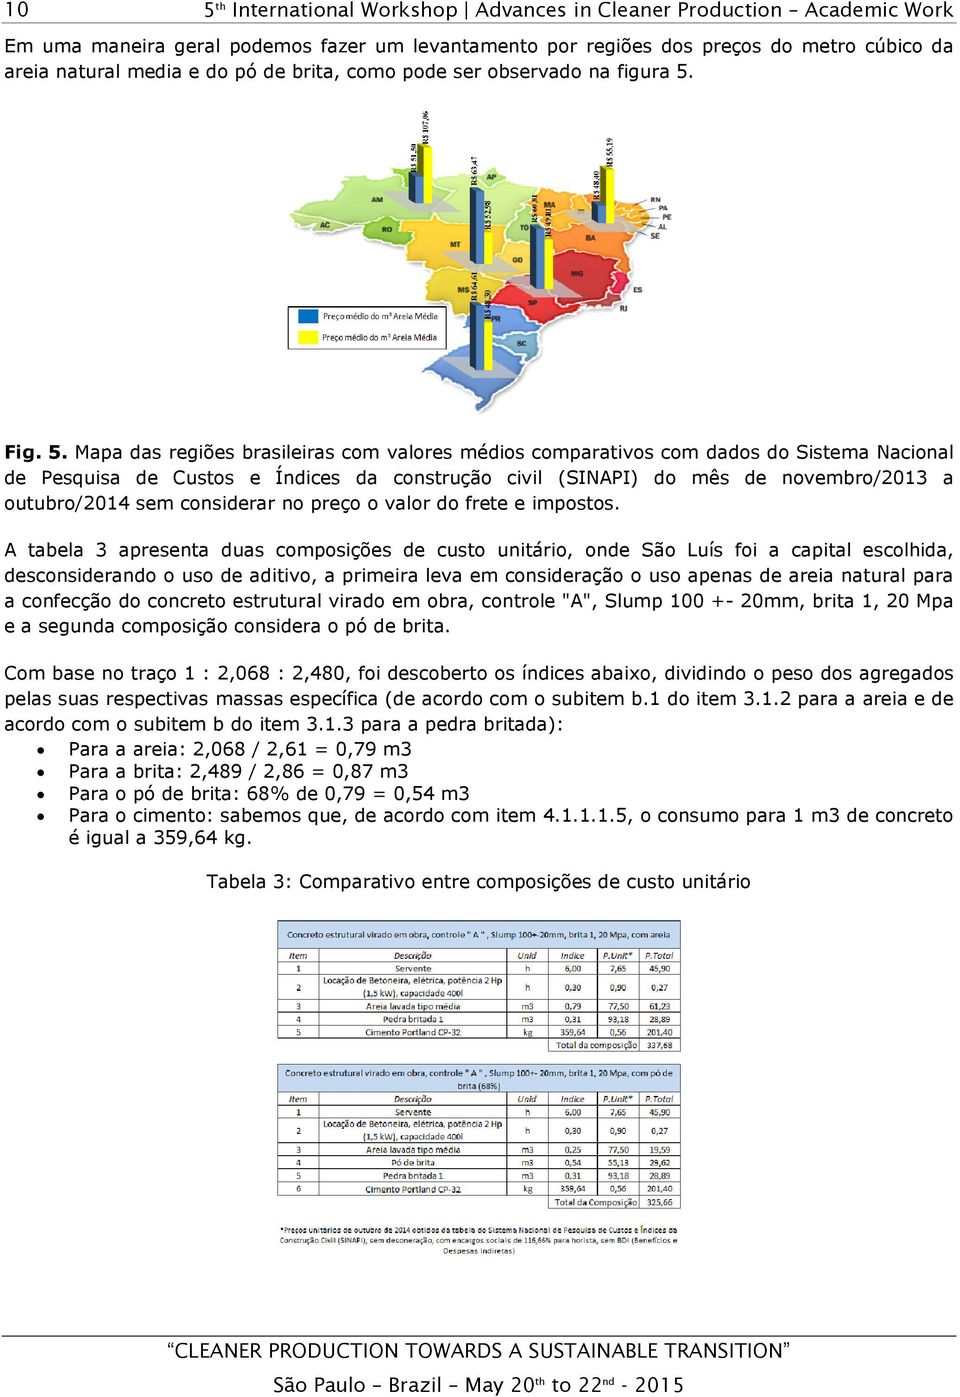 Mapa das regiões brasileiras com valores médios comparativos com dados do Sistema Nacional de Pesquisa de Custos e Índices da construção civil (SINAPI) do mês de novembro/2013 a outubro/2014 sem